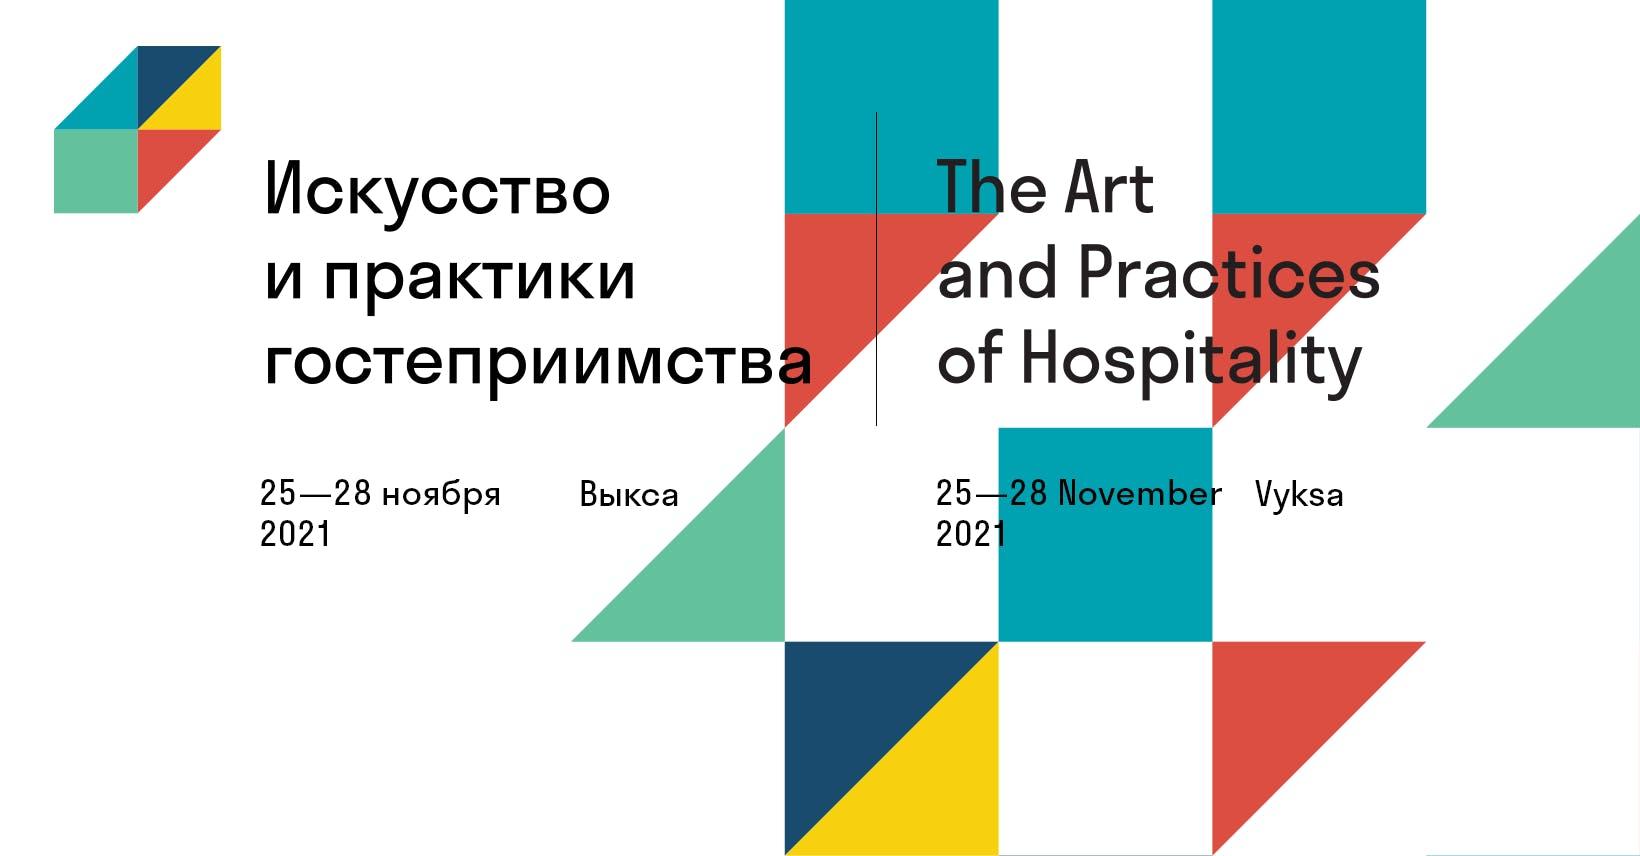 Международная конференция «Искусство и практики гостеприимства», Изображение: https://conference.vyksaair.com/